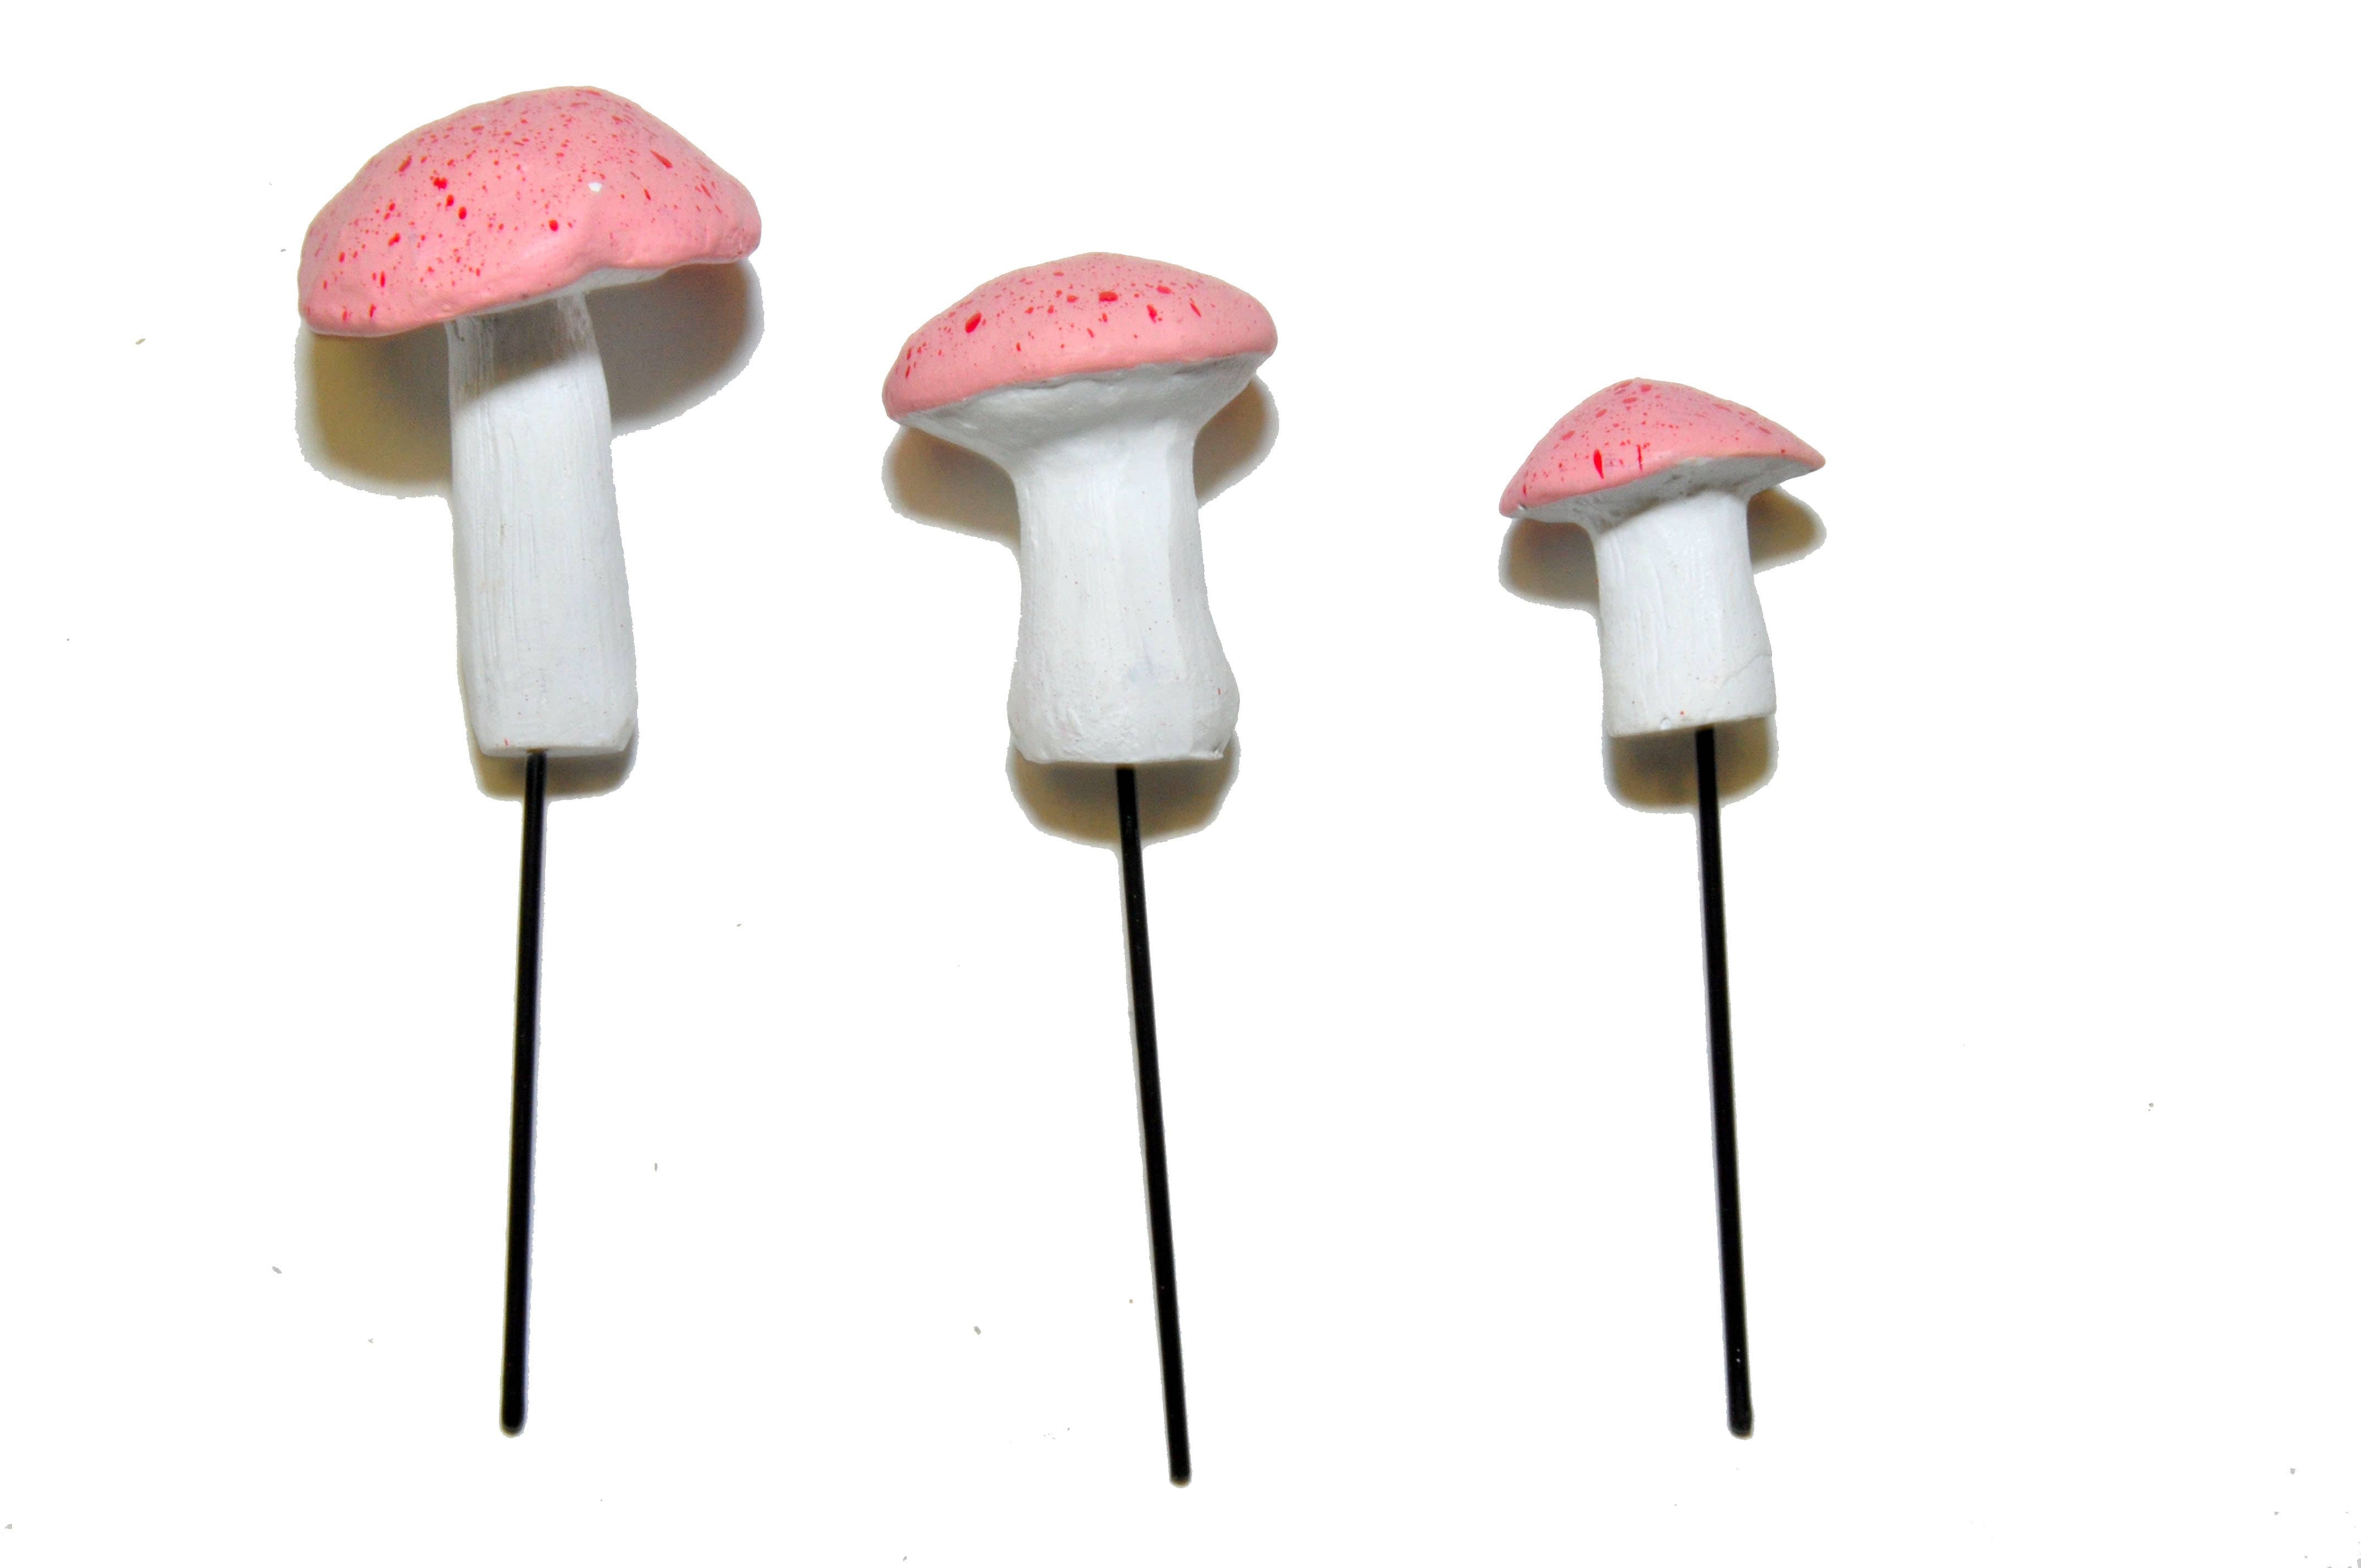 Garden Miniature Mushrooms, 3 pc - Pink - Mini Fairy Garden World